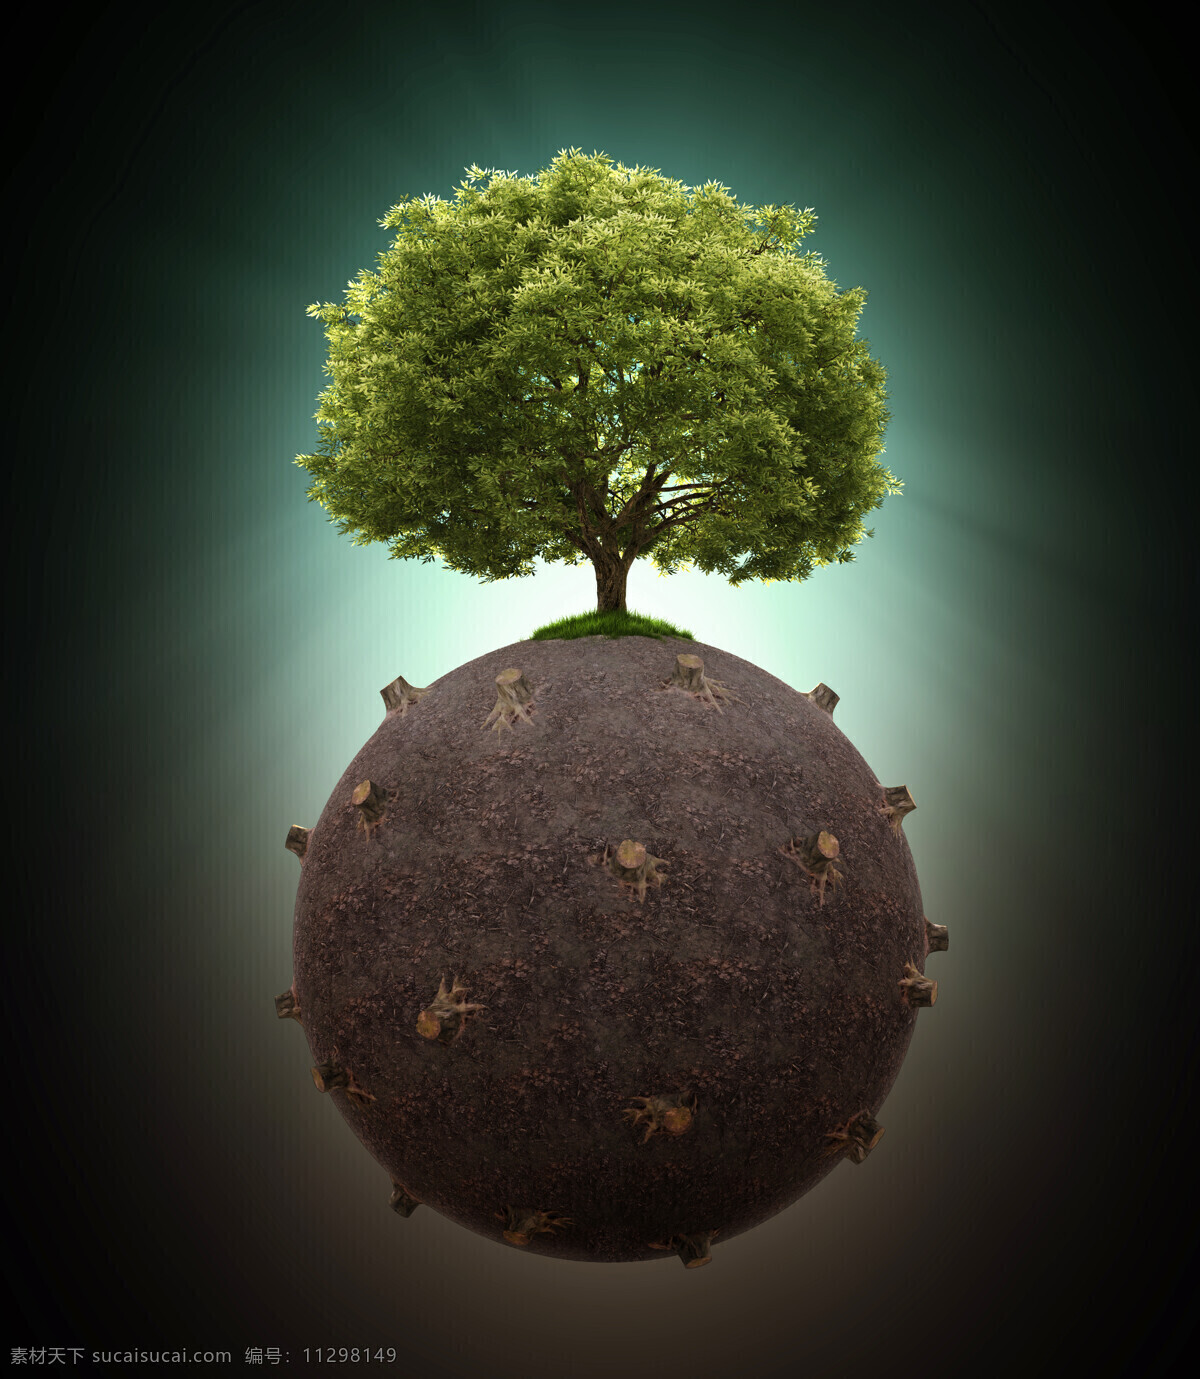 创意 环保 概念 地球保护 树木 树桩 绿色环保 生态环保 节能环保 其他类别 环境家居